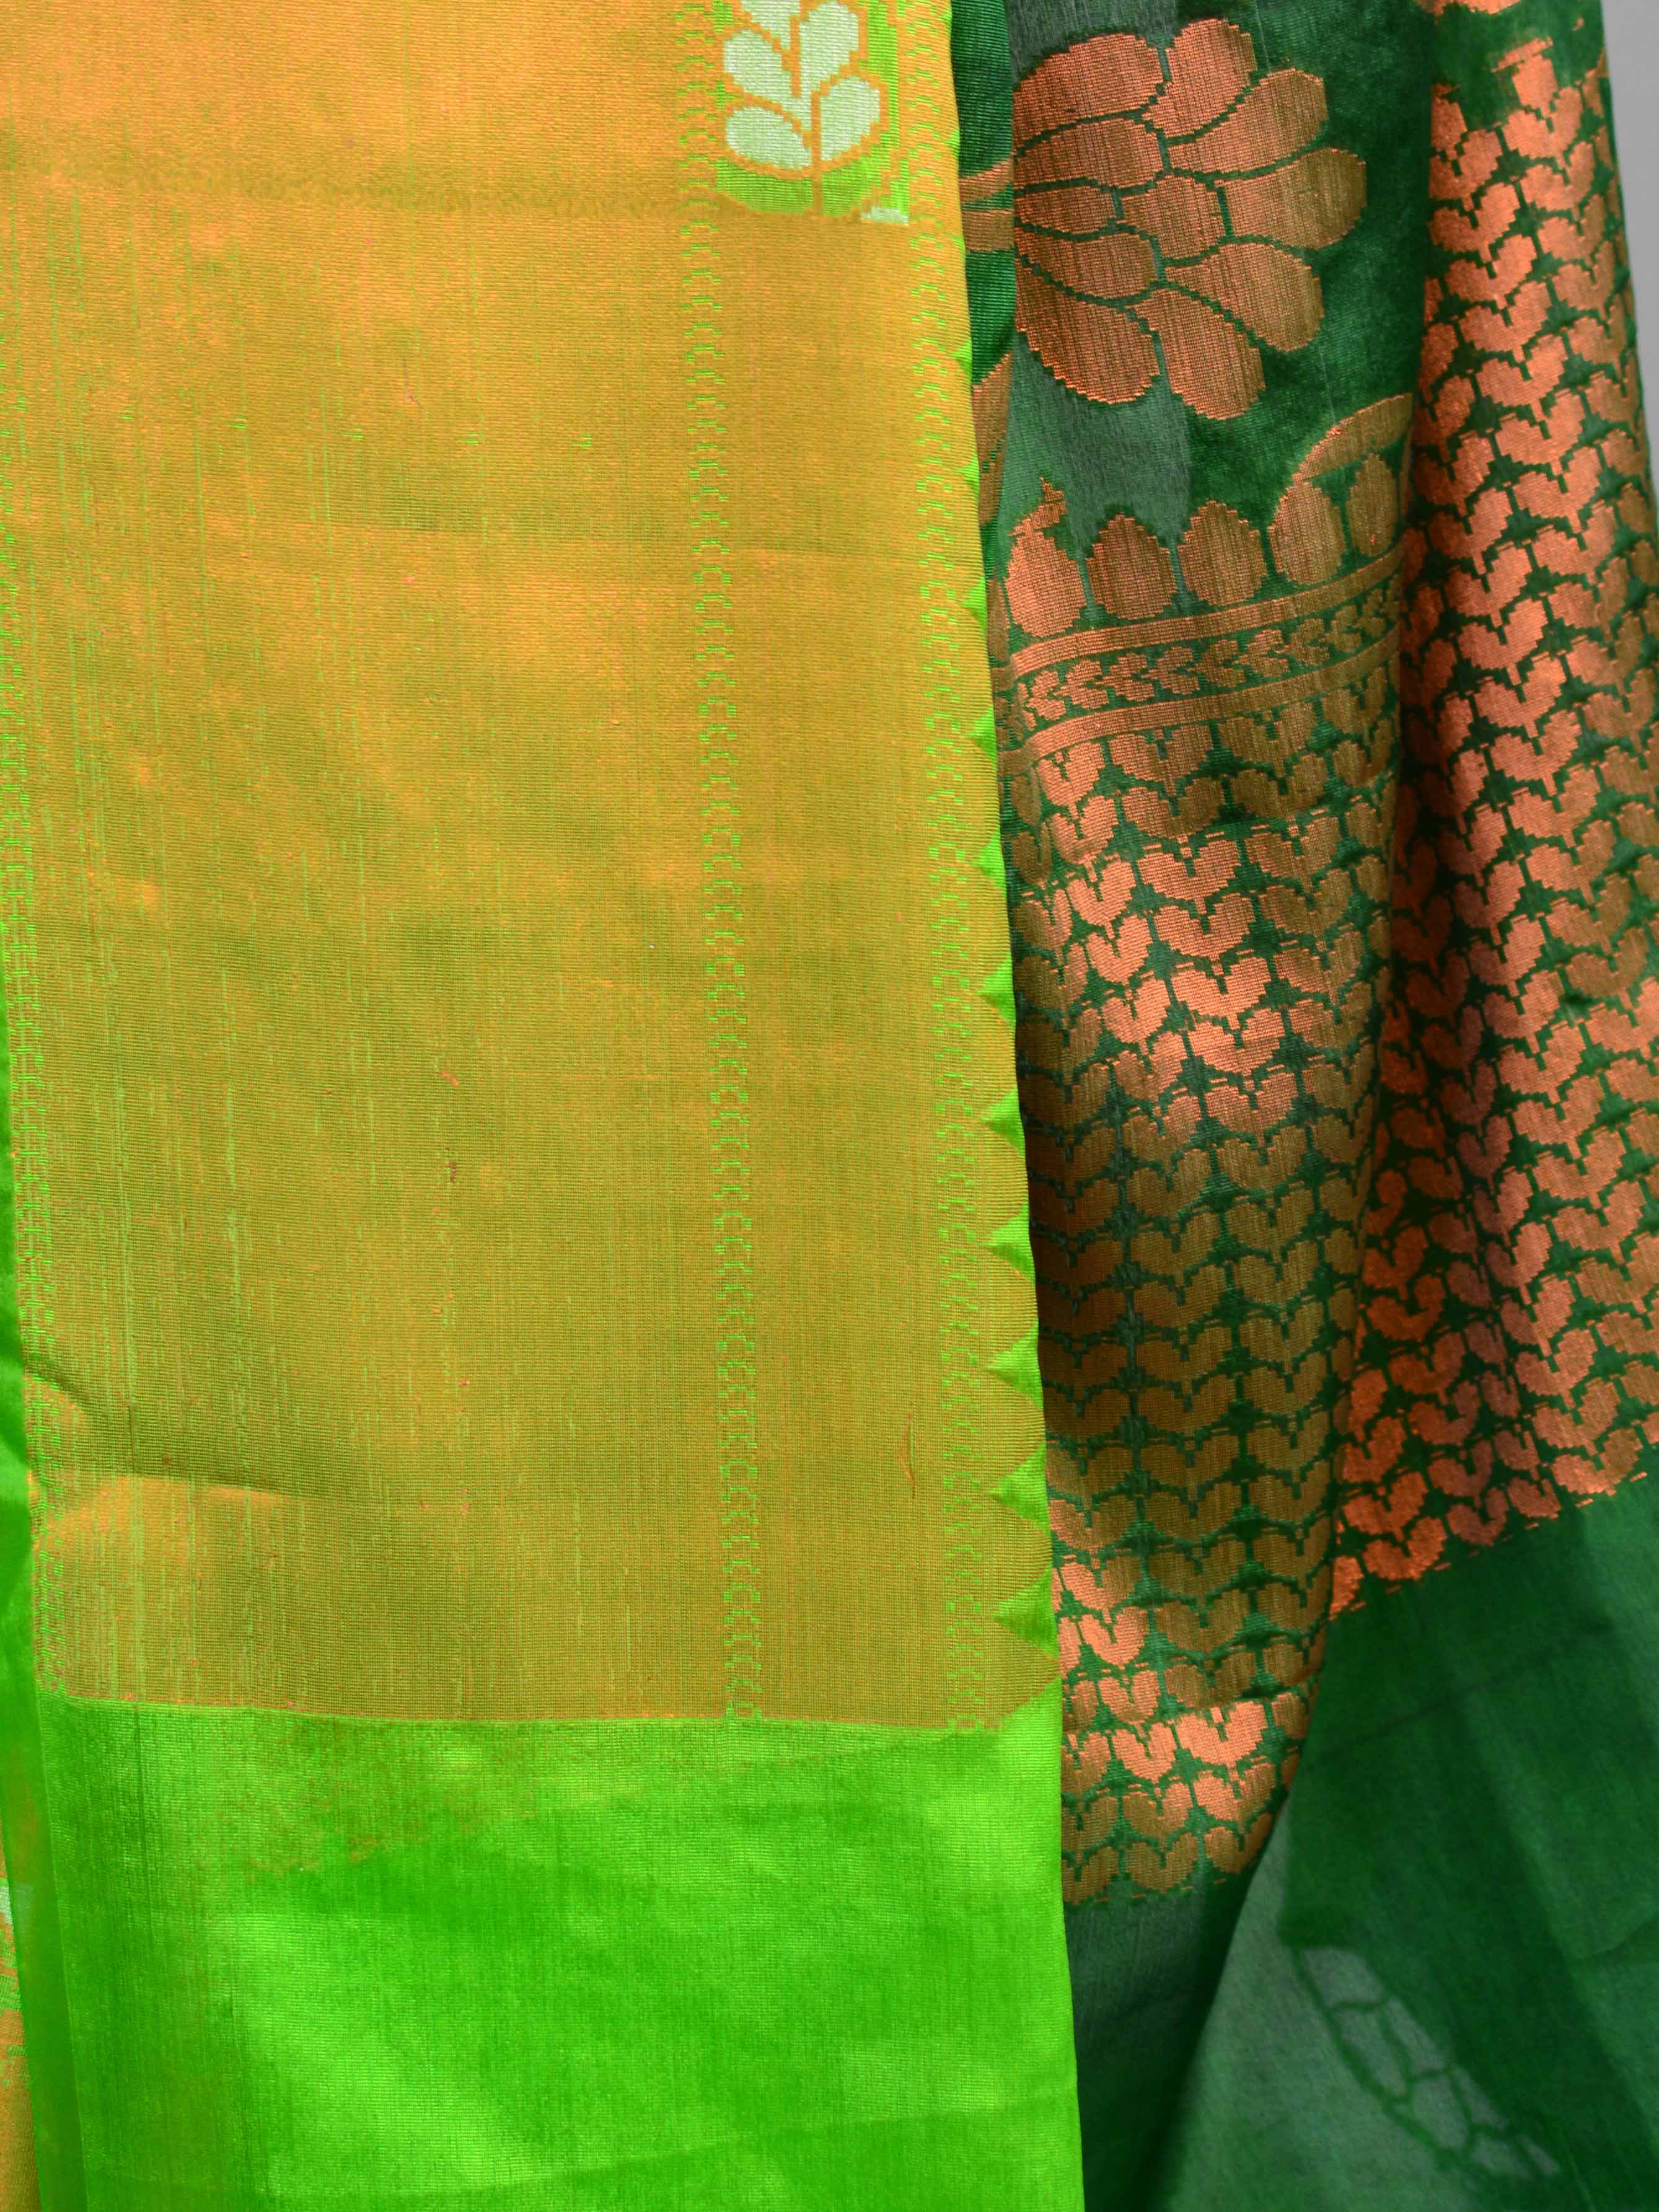 Banarasee Handwoven Semi-Chiffon Saree With Silver & Copper Zari & Dual Color-Green